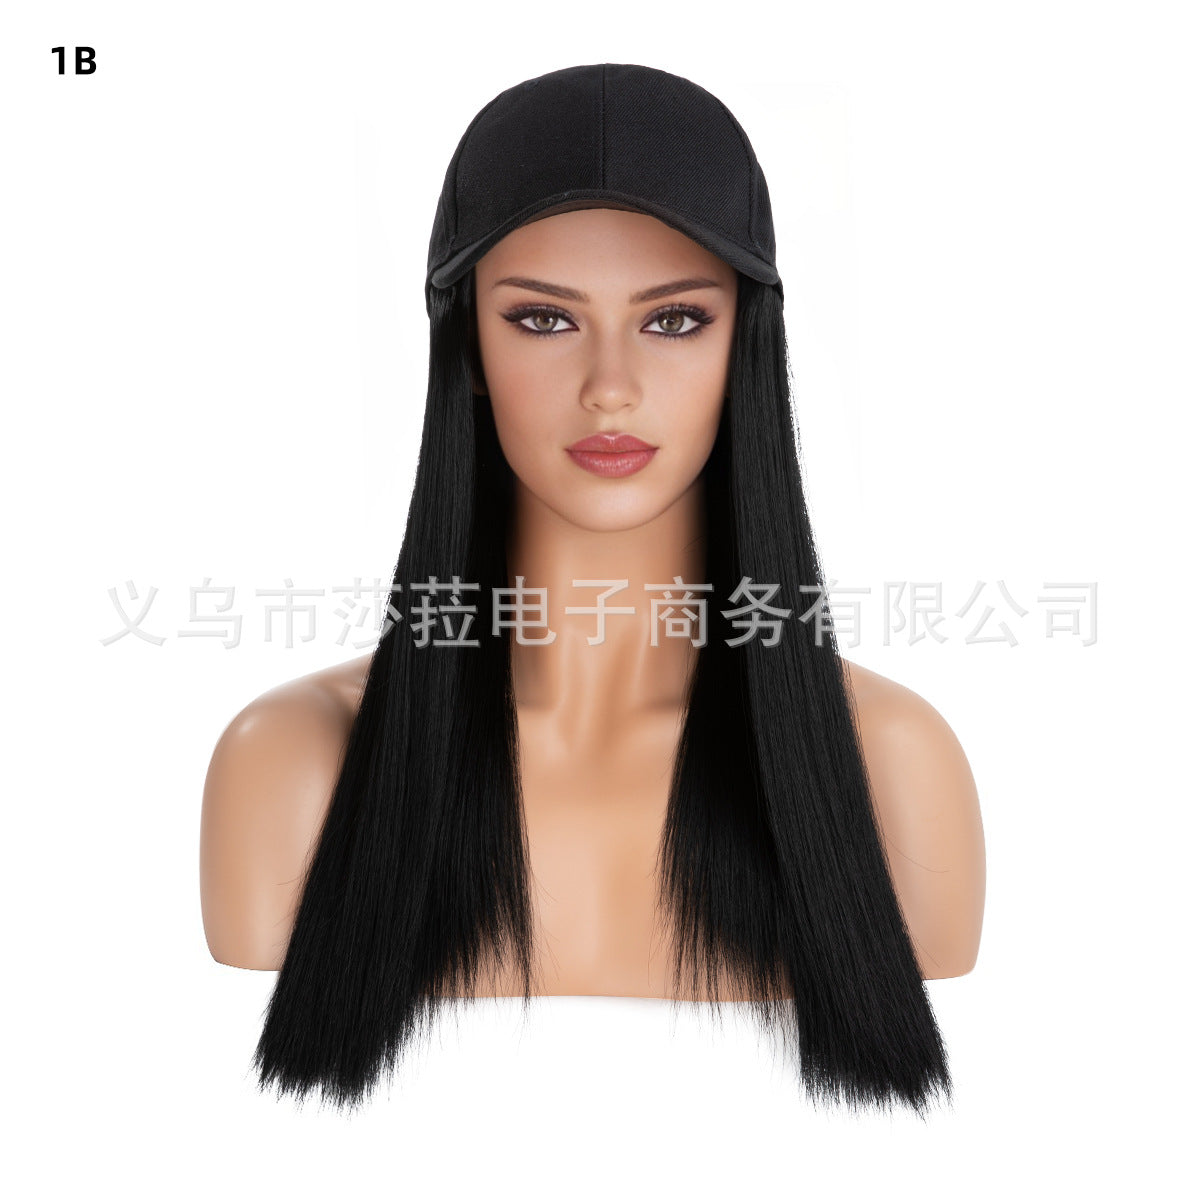 Женский длинный прямой парик из синтетических волос с бейсболкой, цельной шиньоном на всю голову, естественный вид — черная кепка, каштановые волосы